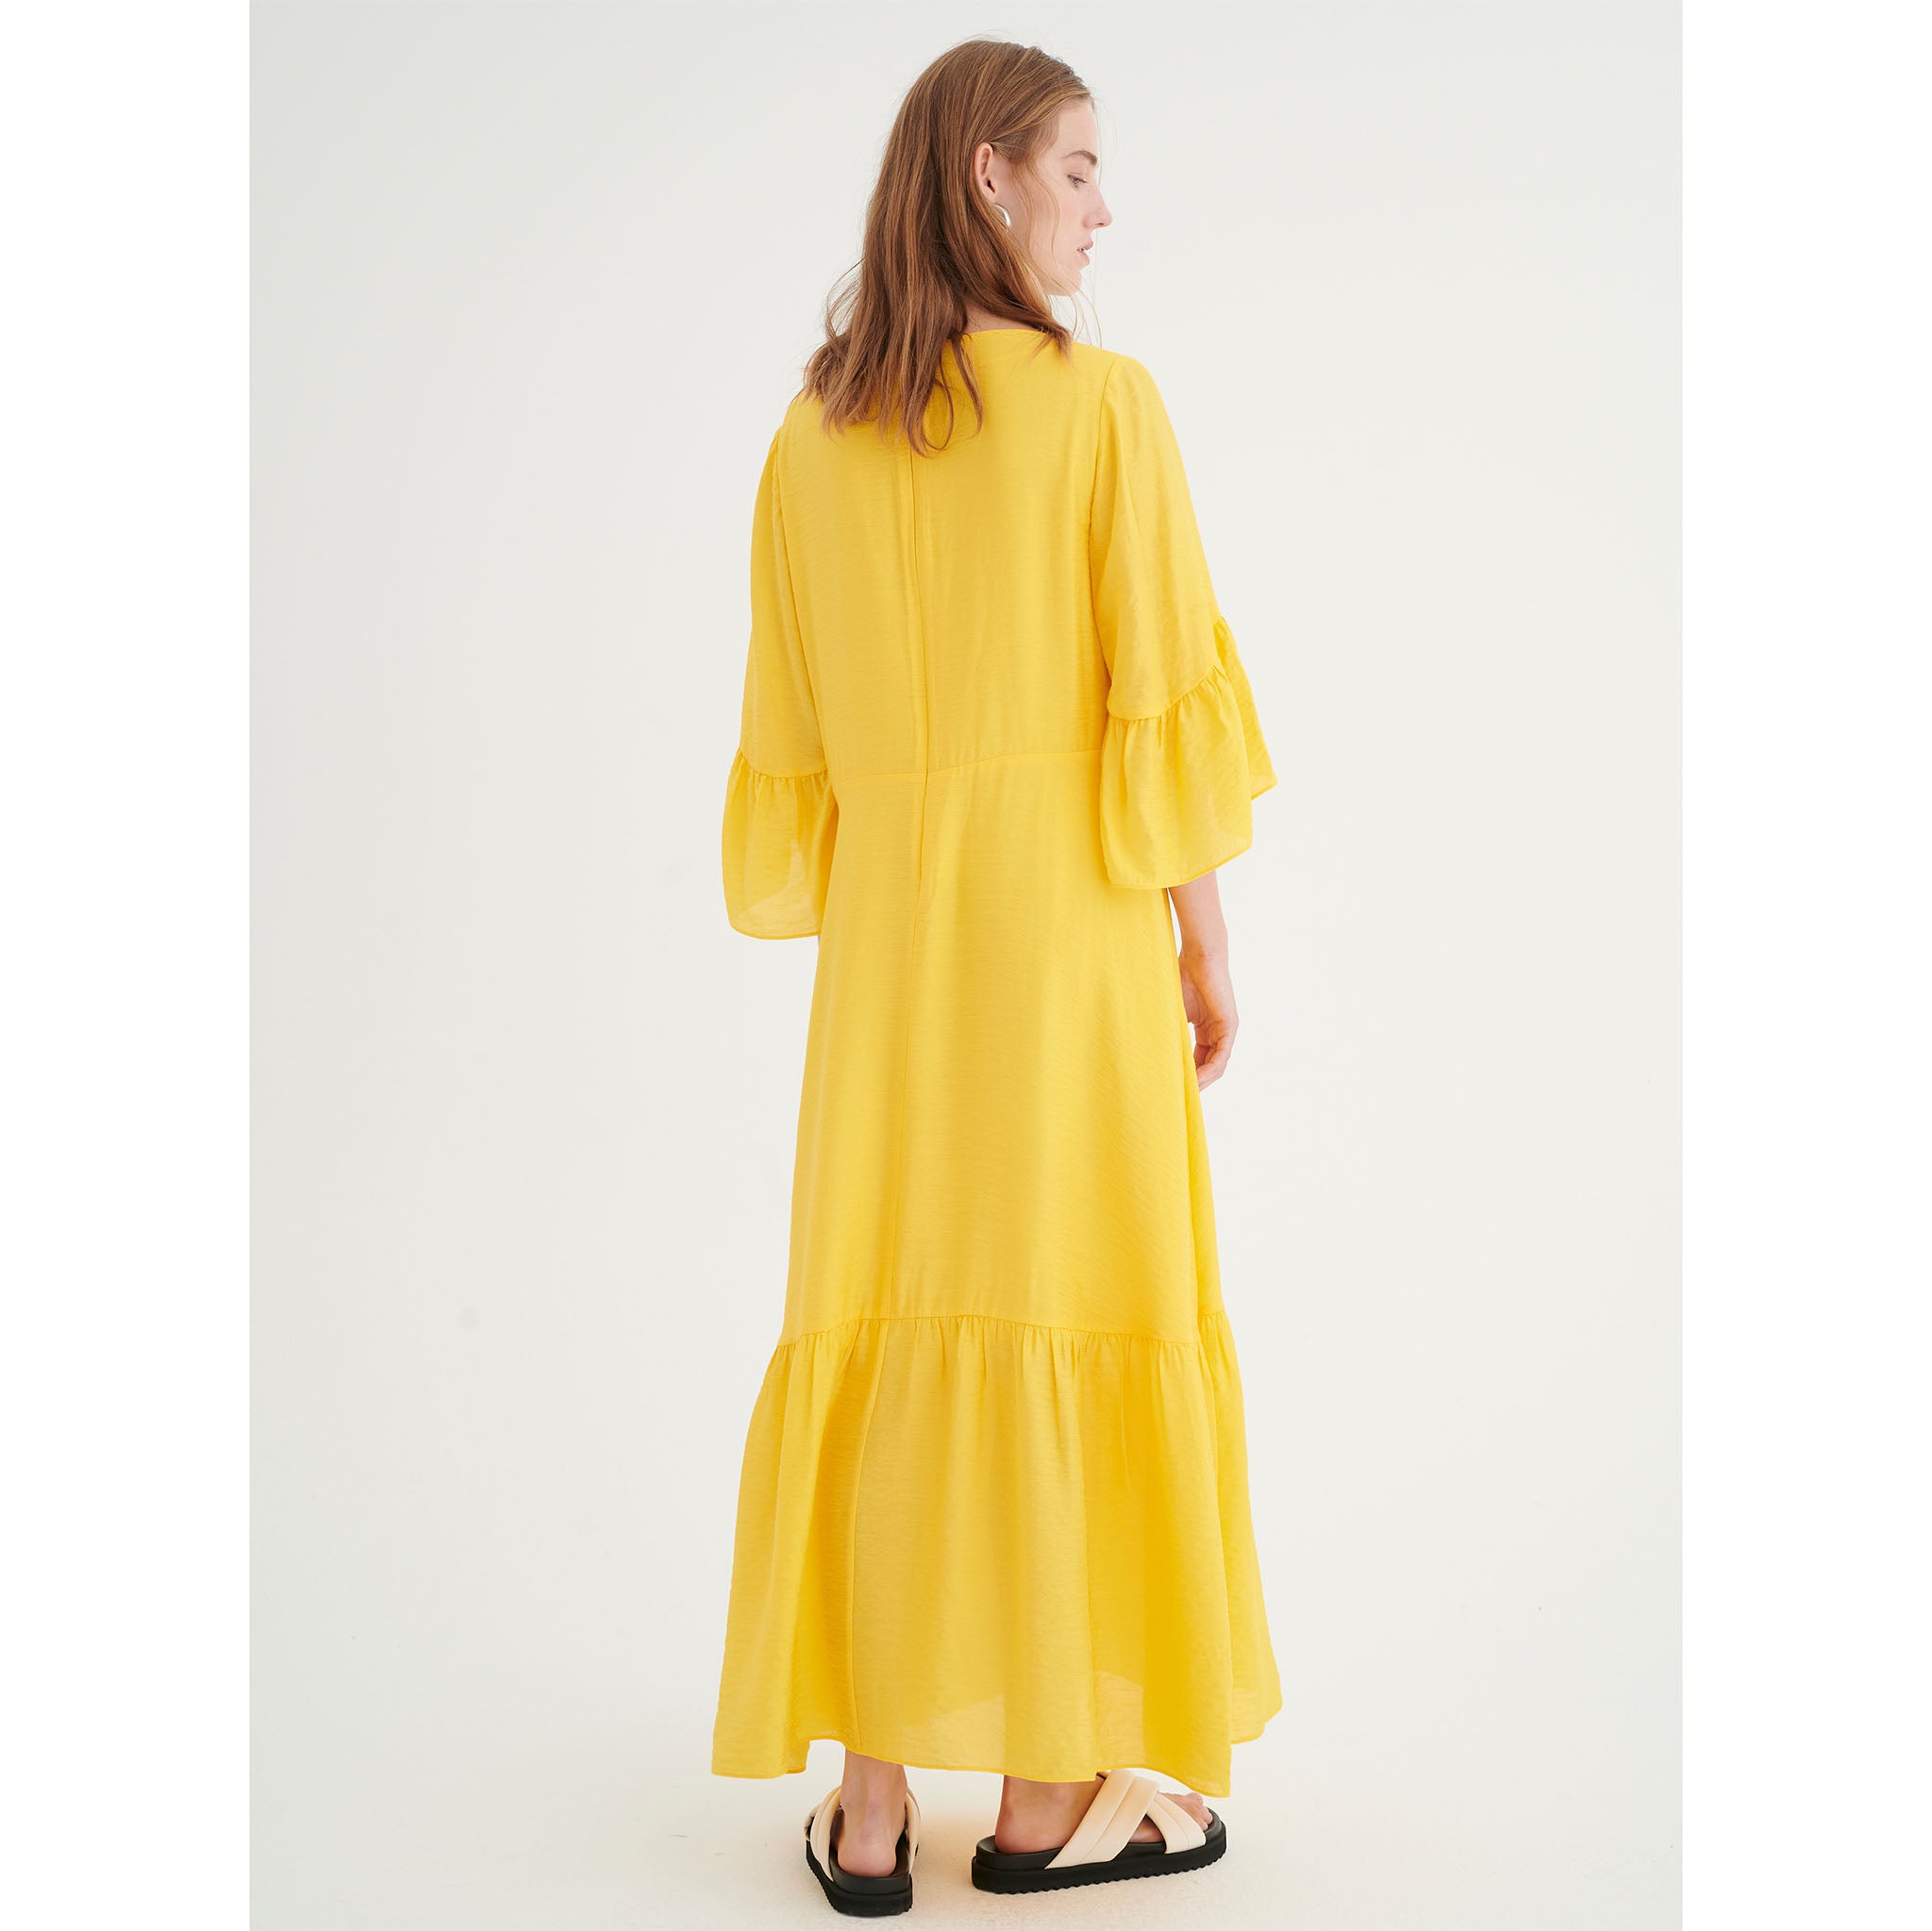 In Wear, kirkkaan keltainen, pitkä mekko. Frillat hihoissa ja helmassa. Takakuva mallin päällä.